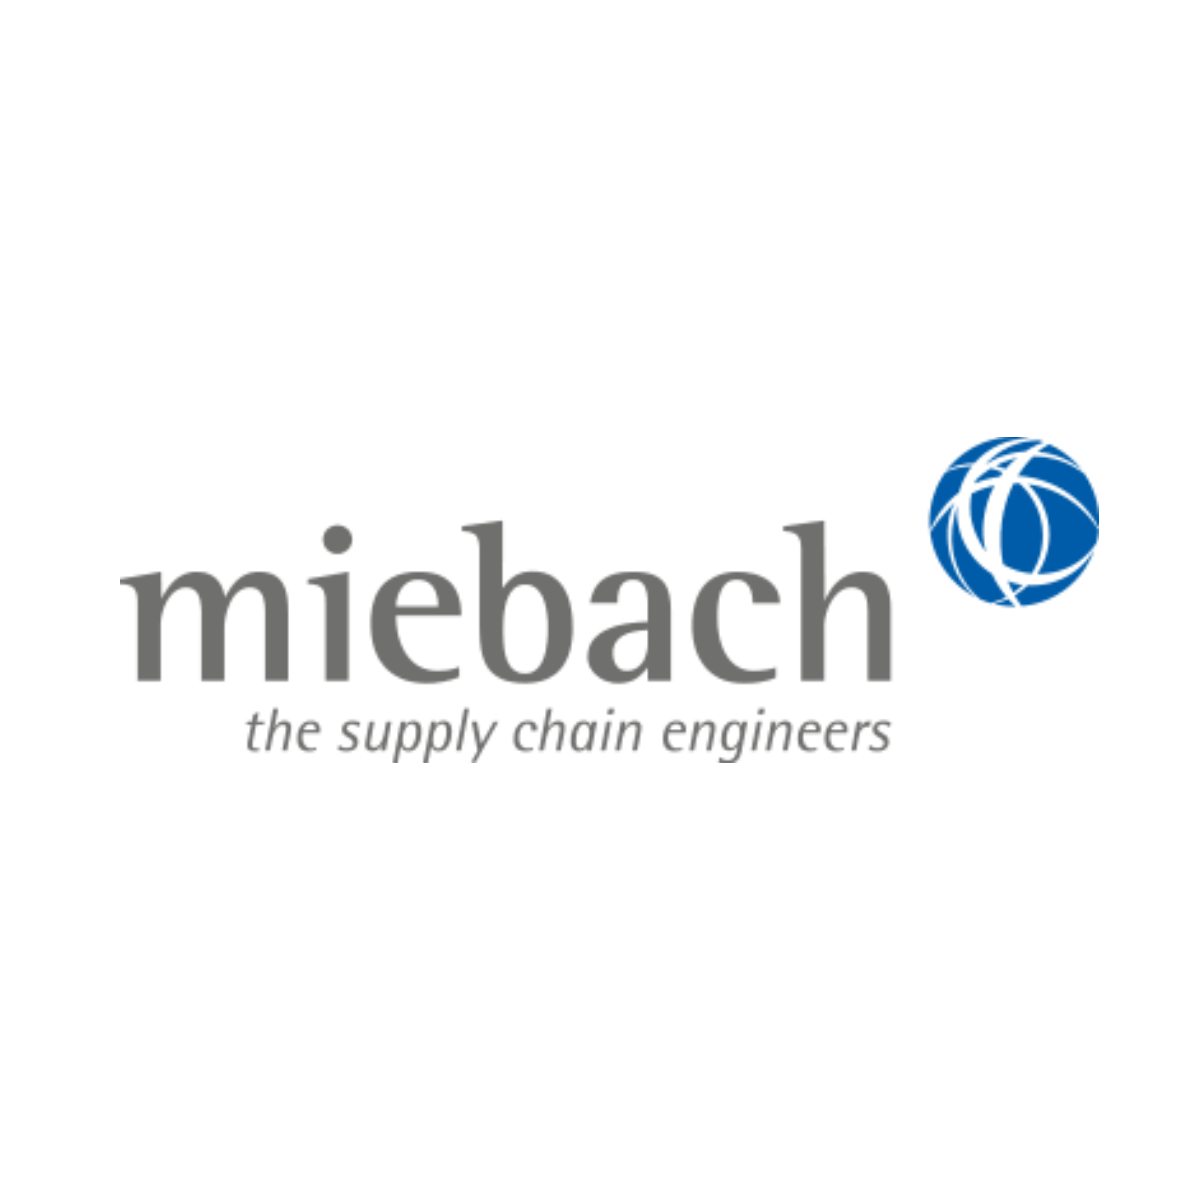 Miebach